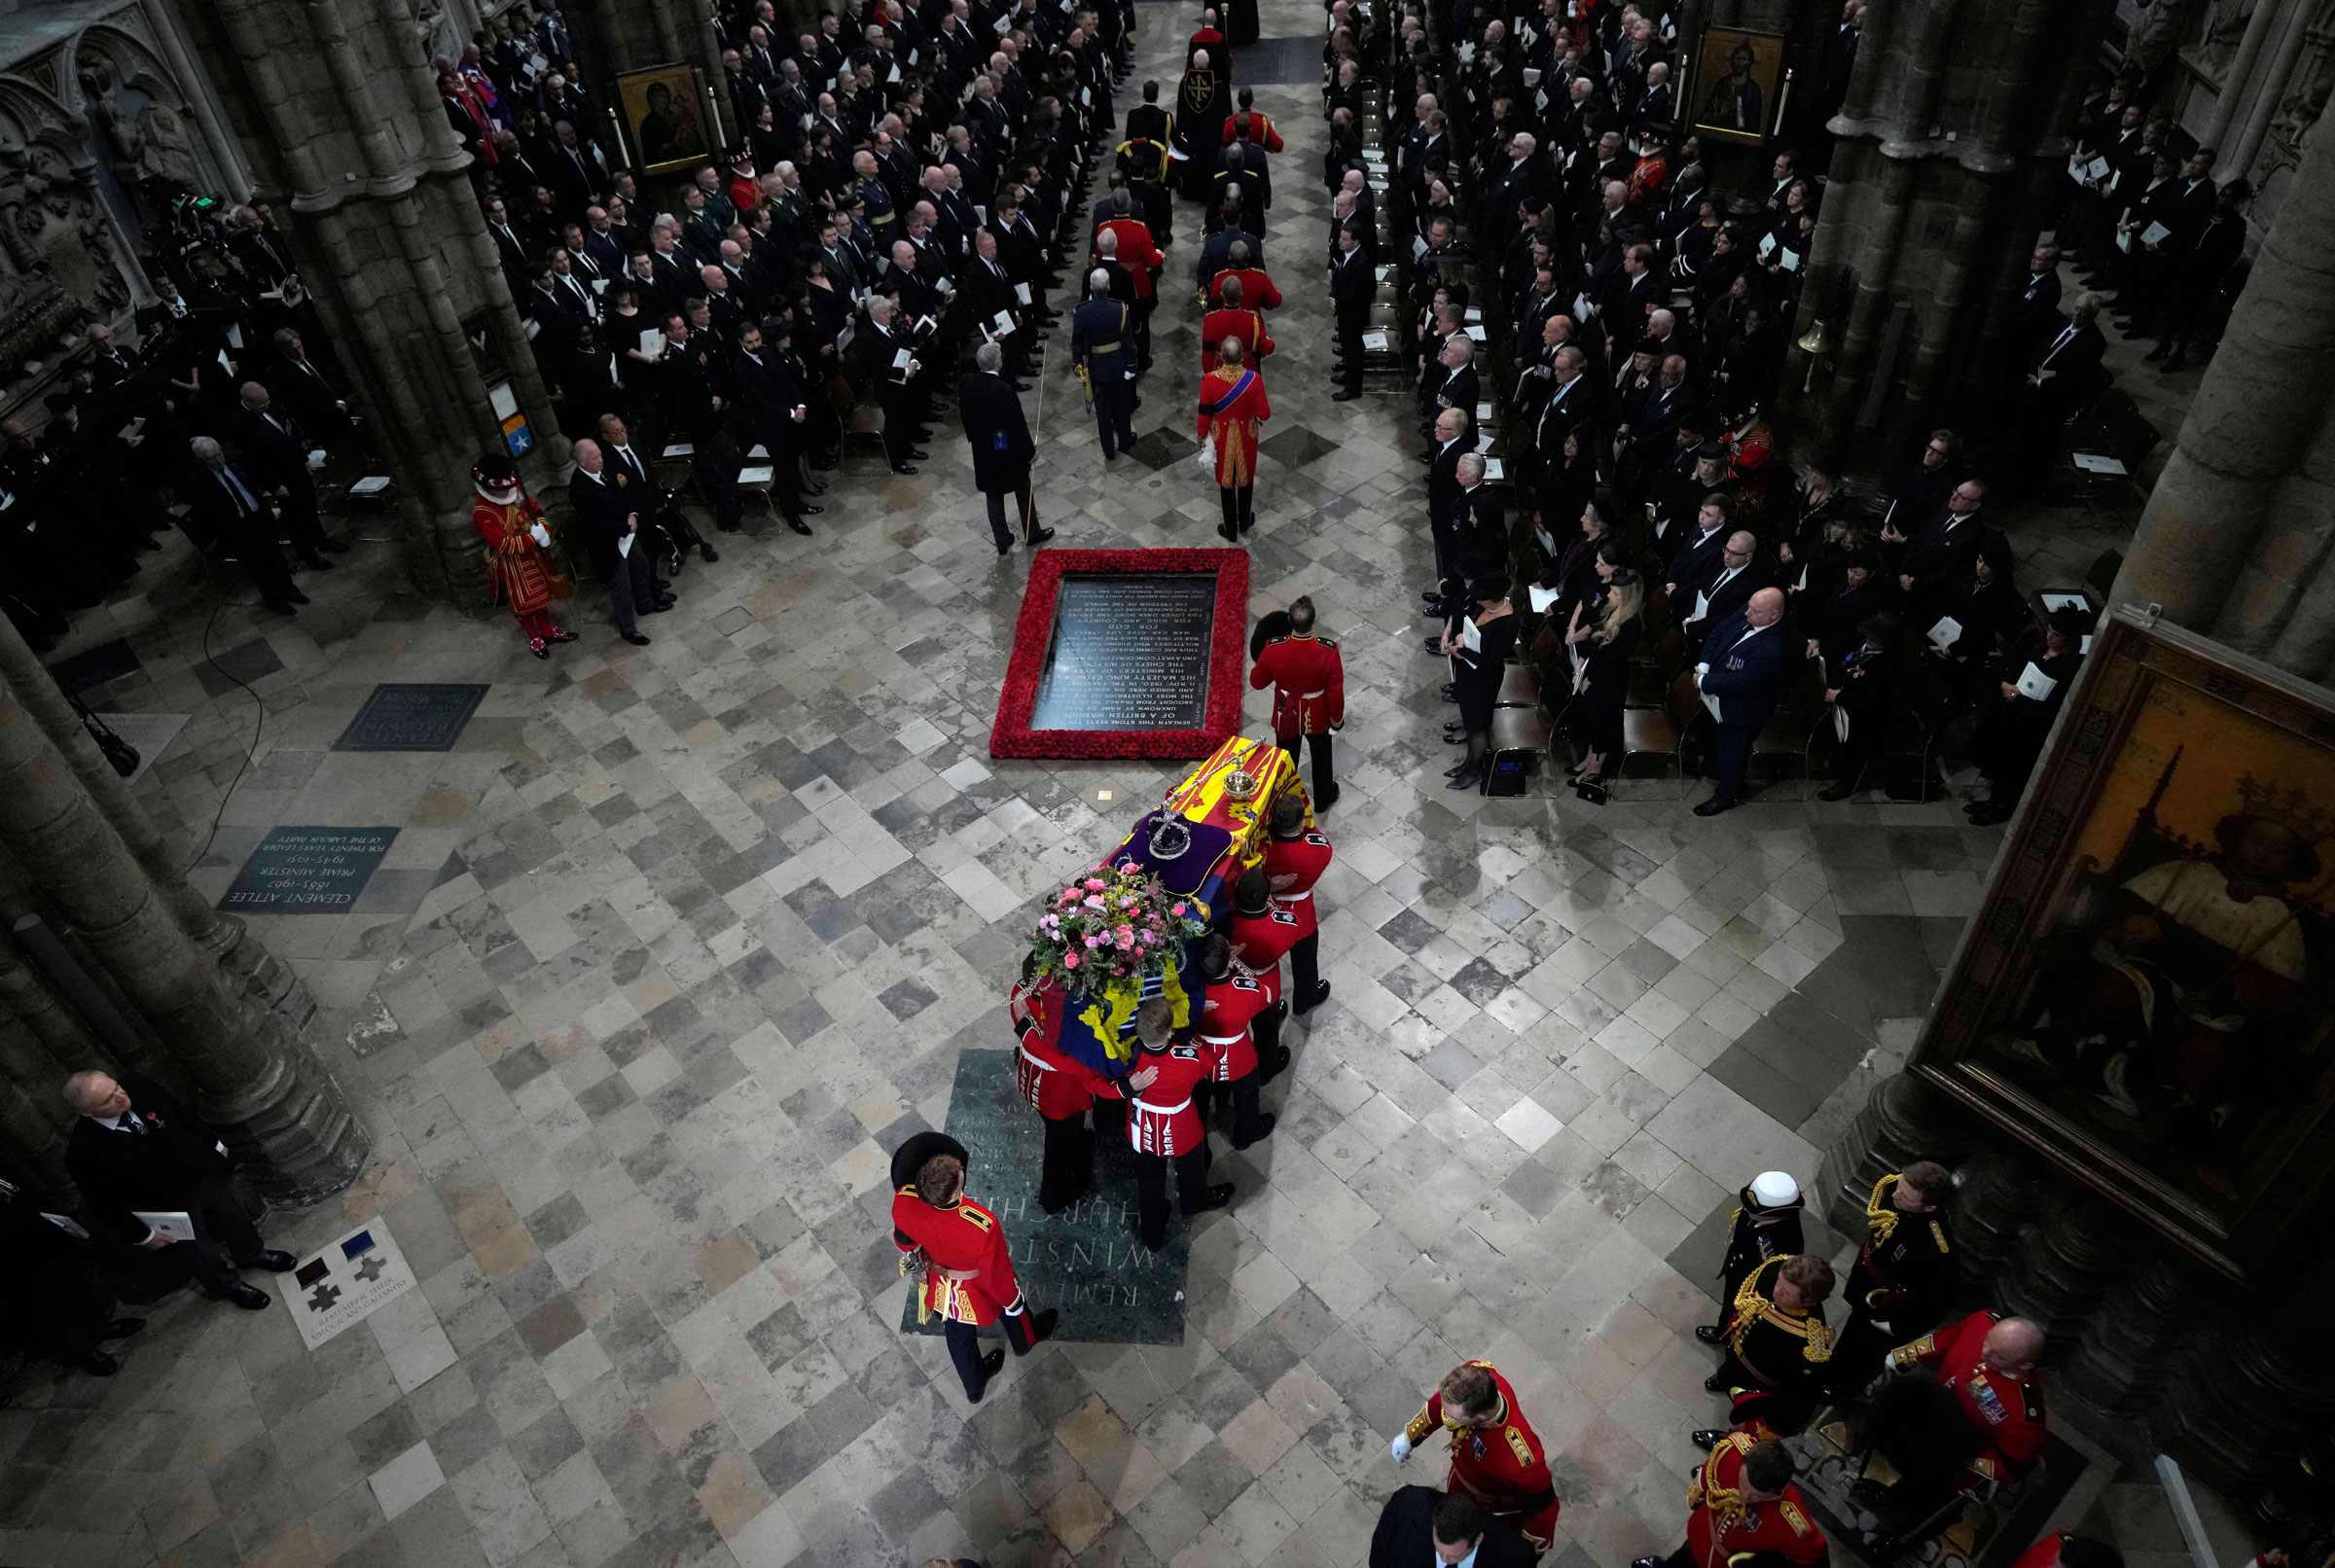 Kraliçe II. Elizabeth'in imparatorluk devlet tacı üstünde duran tabutu, Kraliçe II. Elizabeth'in Devlet Cenazesi sırasında taşıyıcı taraf tarafından Westminster Manastırı'na taşınır.  (Frank Augstein—Havuz/AFP/Getty Images)